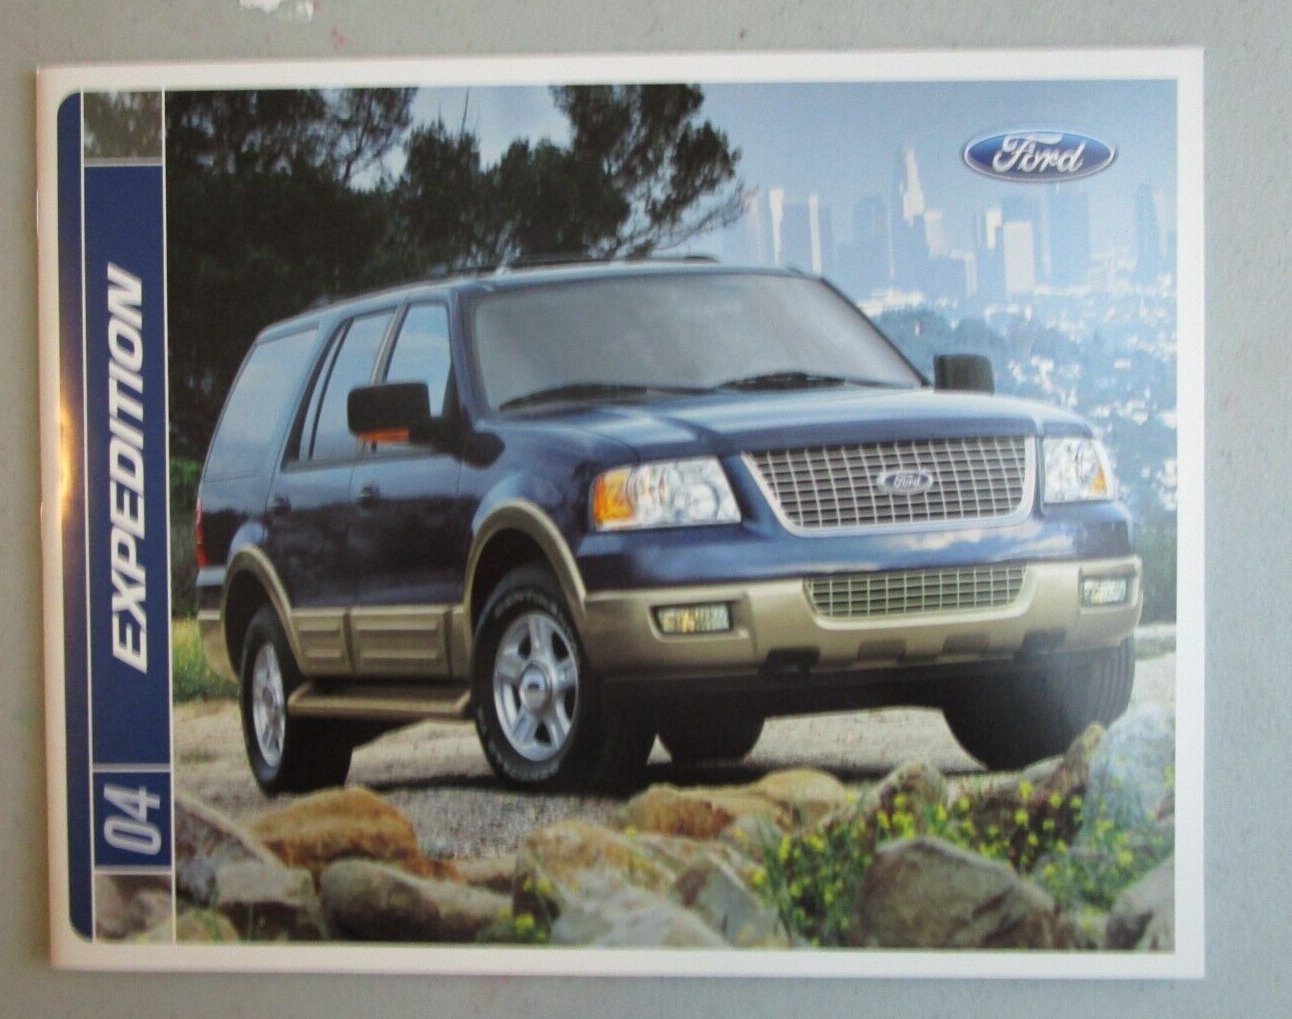 2004 FORD Expedition Original Car Catalog Car Sales Brochure Automobilia Book